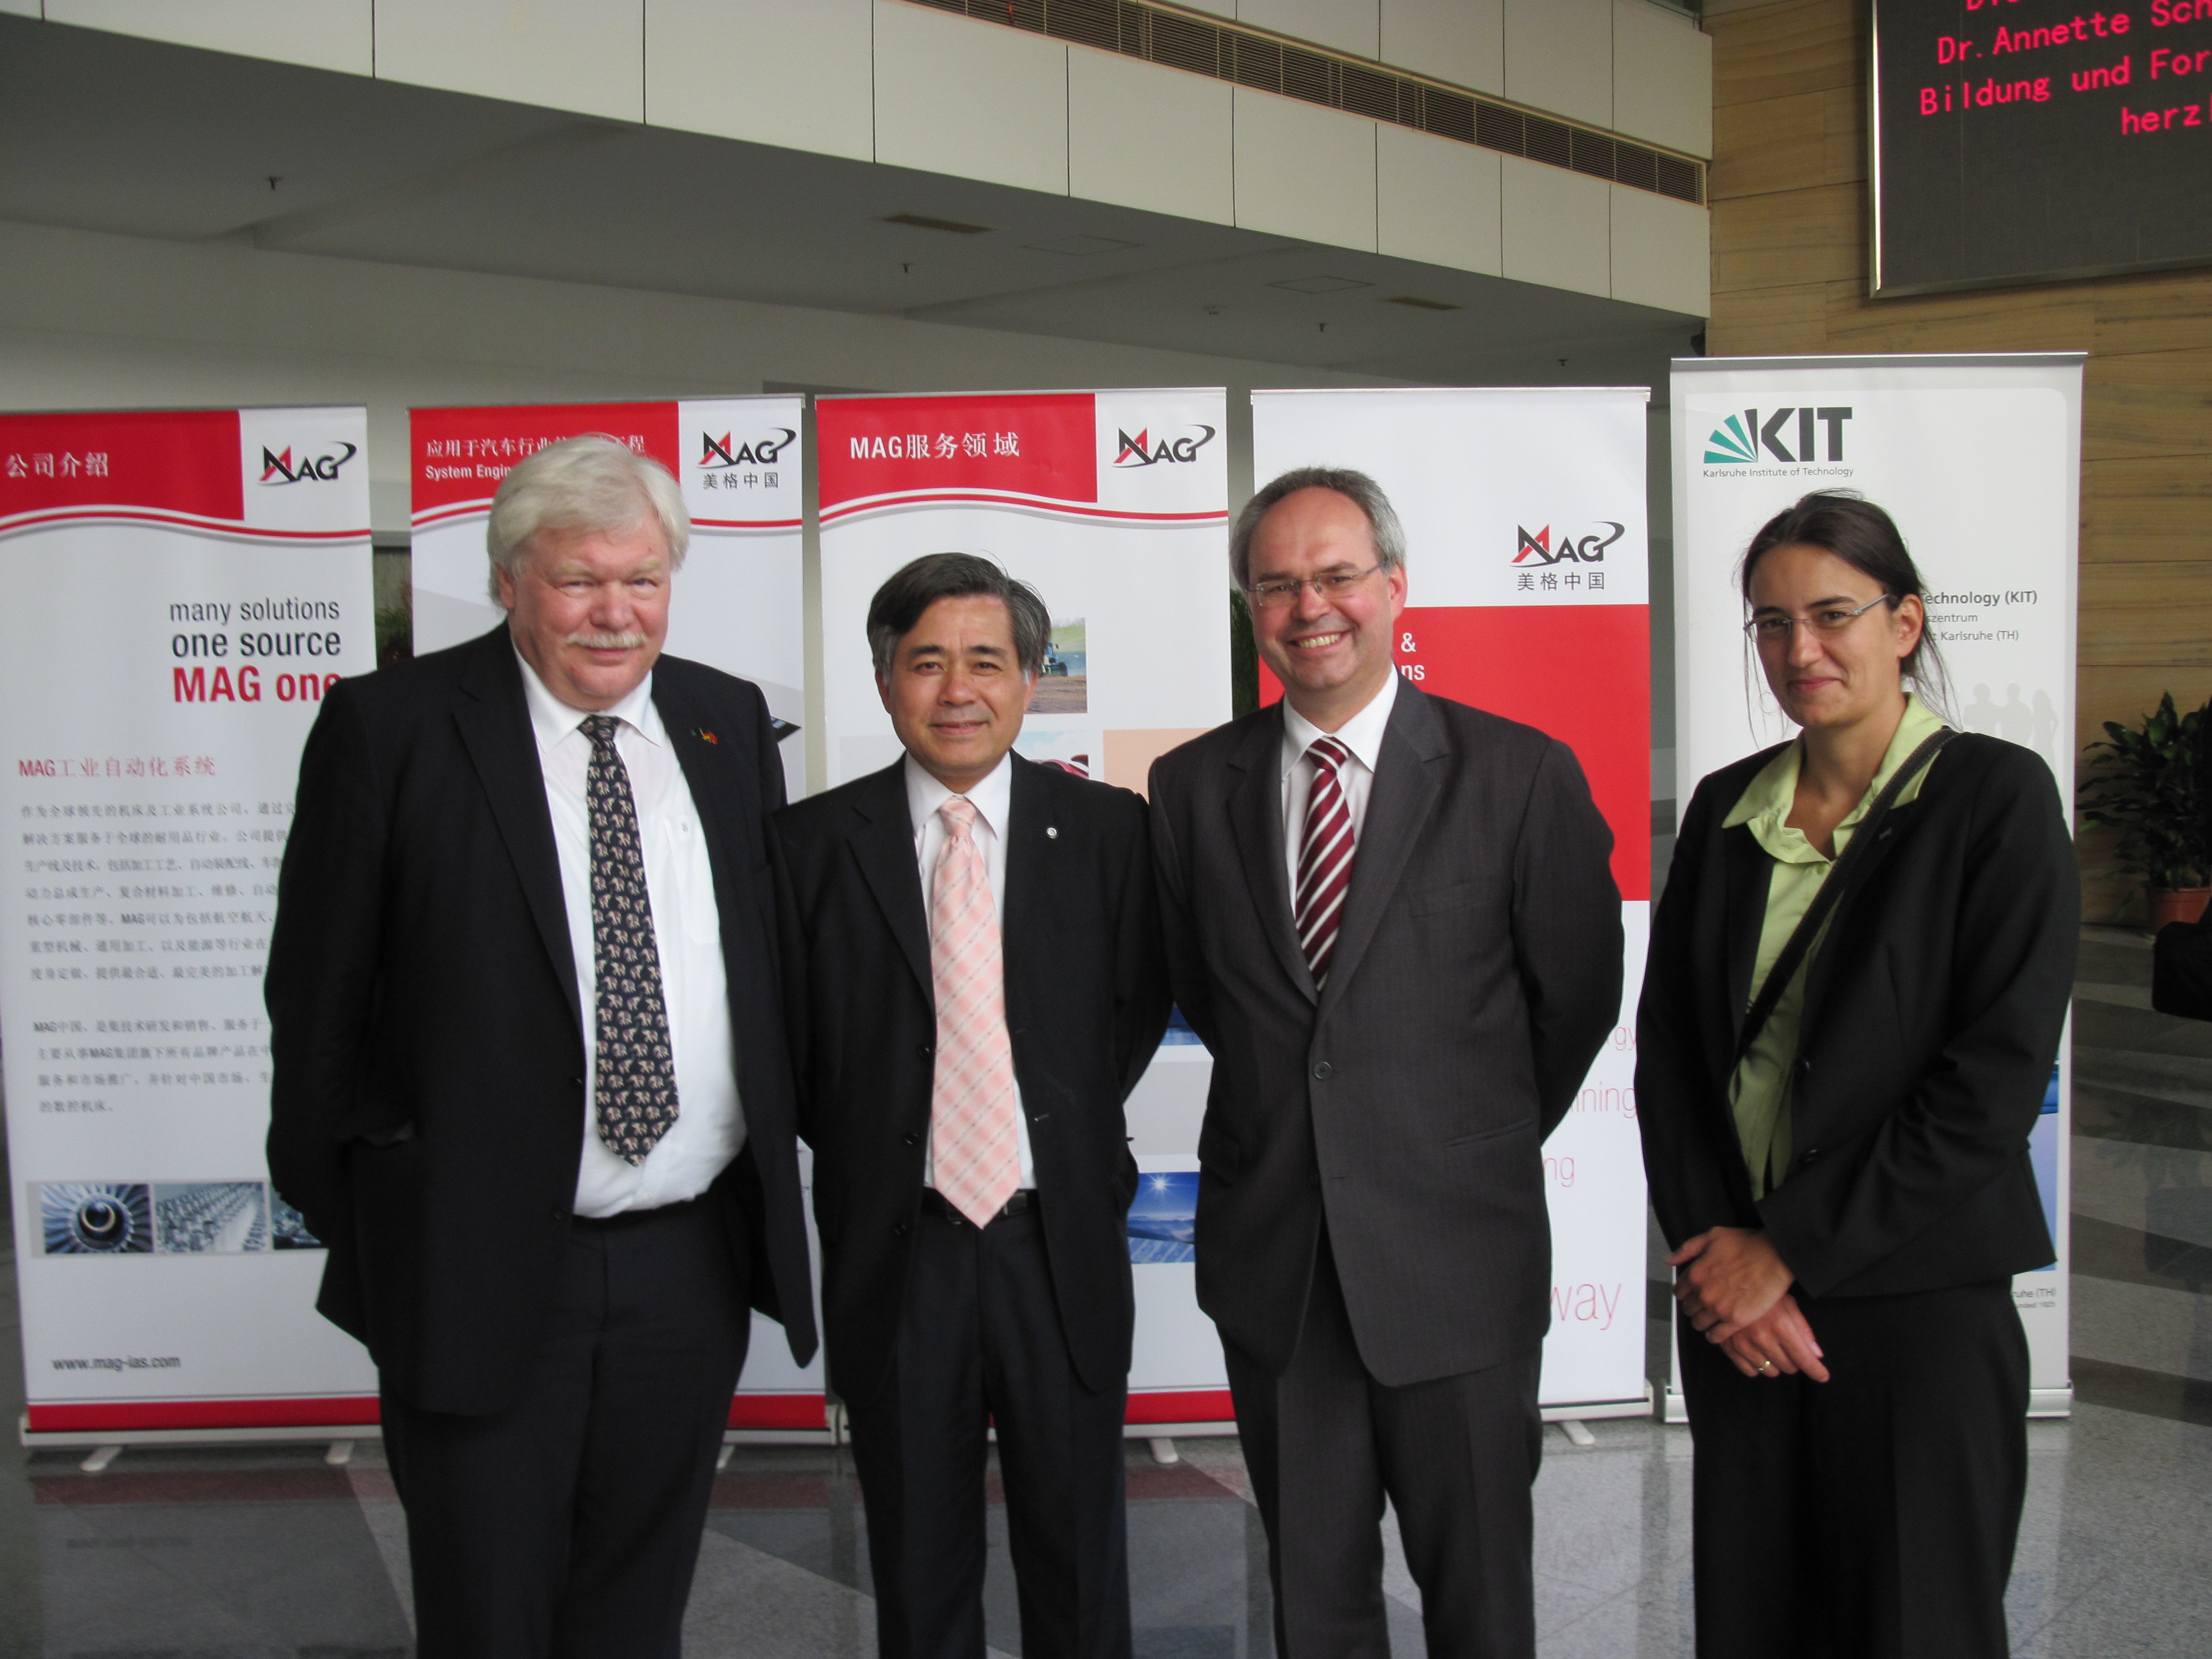 KIT-Präsident Hippler, Professor Fleischer (MAG), Professorin Lanza (wbk) und Vertreter von der Tongji-Universität